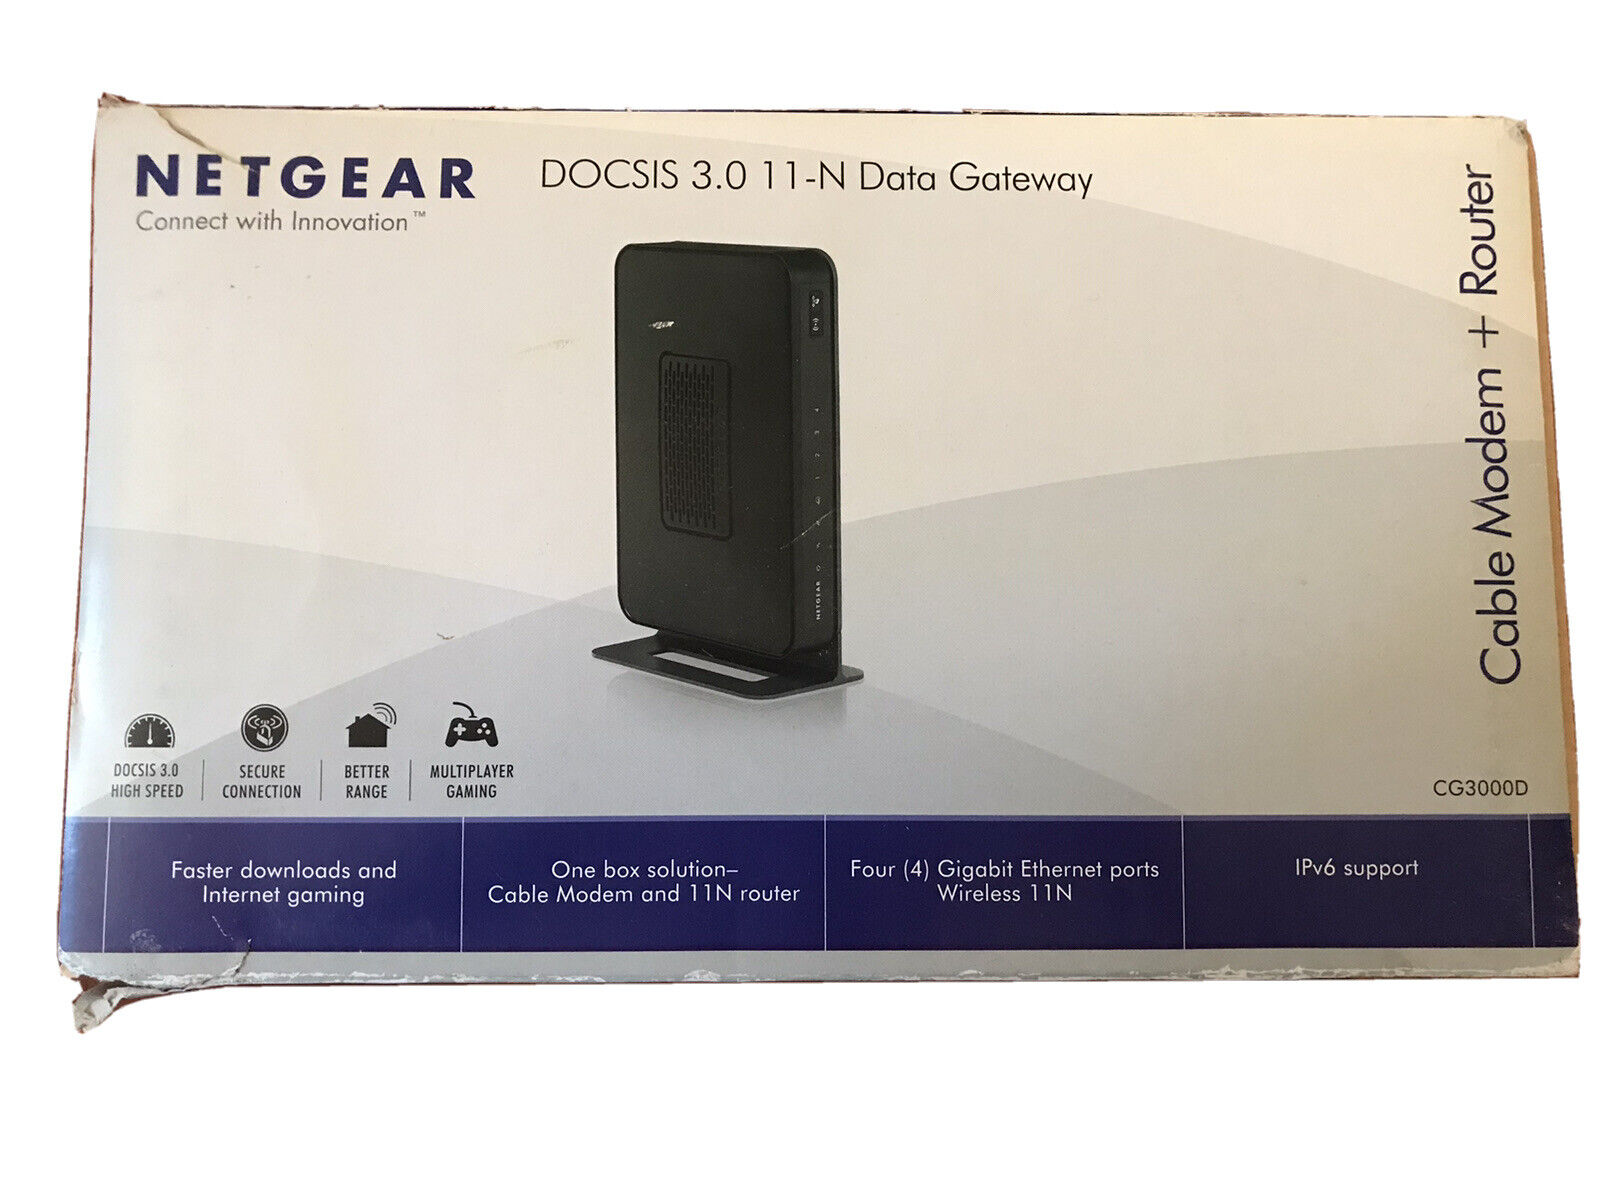 NETGEAR DOCSIS 3.0 11-N Data Gateway Cable Modem Router CG3000D